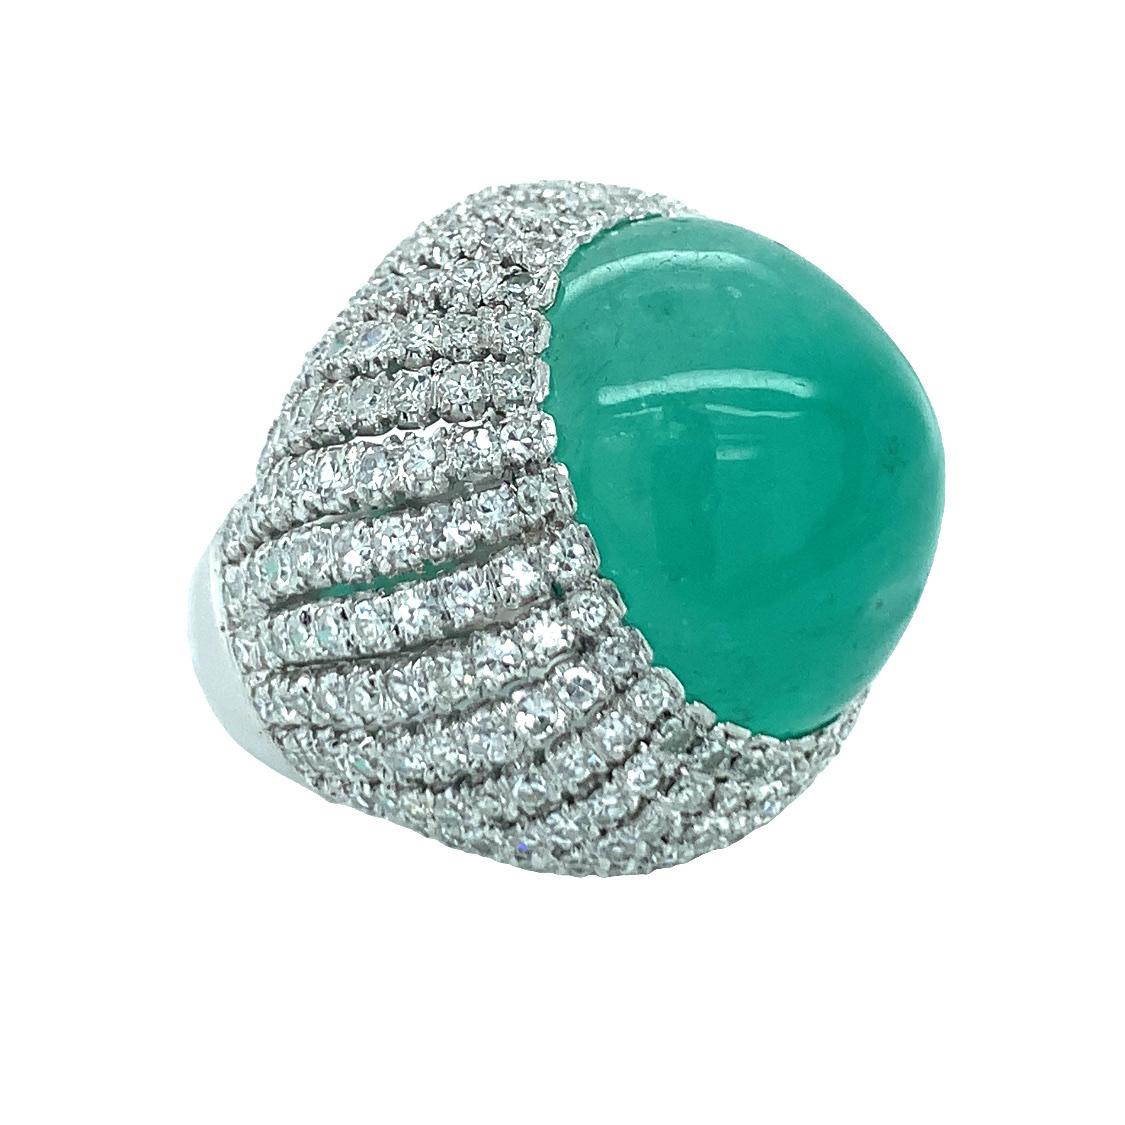 Mid-Century Smaragd und Diamant 14K Weißgold Bombe Ring zentriert eine ovale Cabochon, lebendige Smaragd mit einem Gewicht von 30 ct. und Messung 20 x 18 Millimeter in der Größe. Der Ring ist mit 252 einzelnen runden Diamanten von insgesamt 3,78 ct.